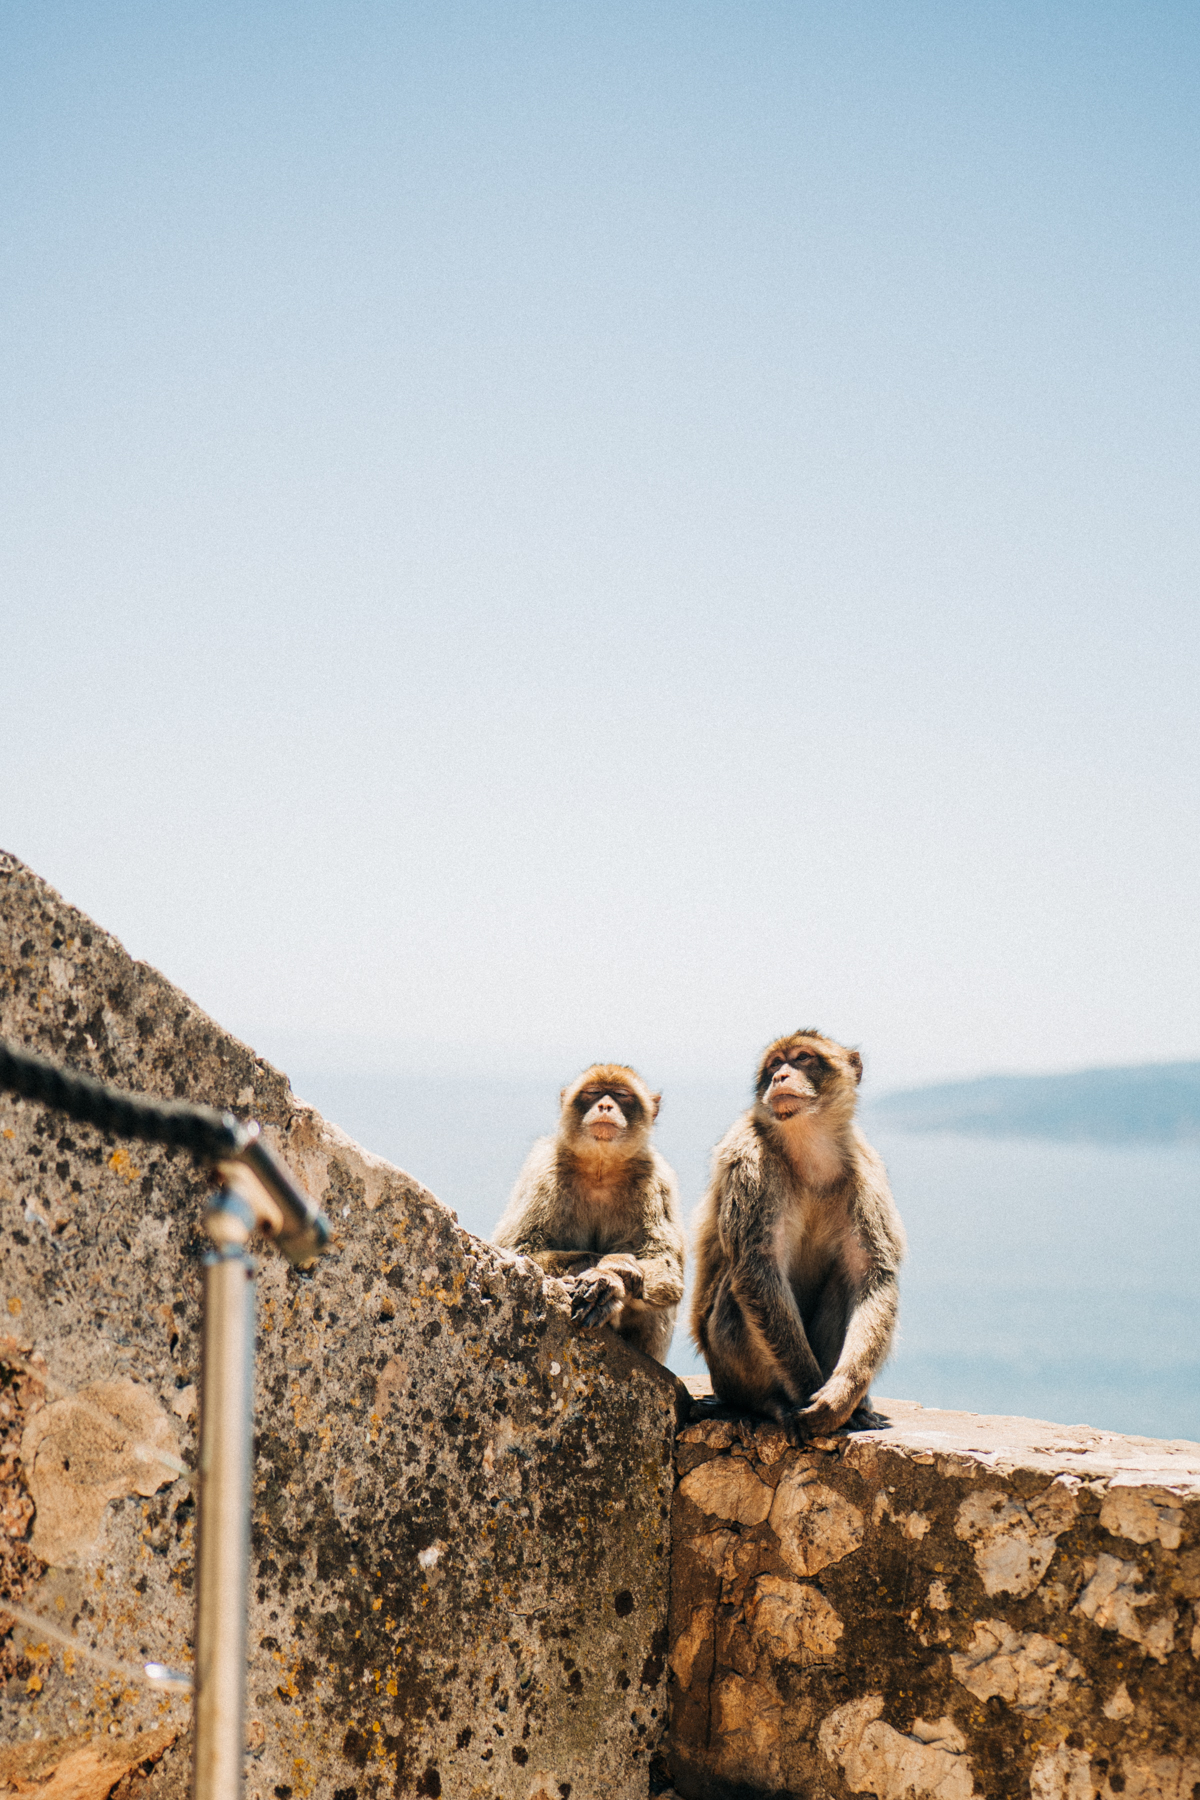 Affenfelsen Fels von Gibraltar Bilder 5 - In Gibraltar sind die Affen los: Zu Besuch auf dem Affenfelsen